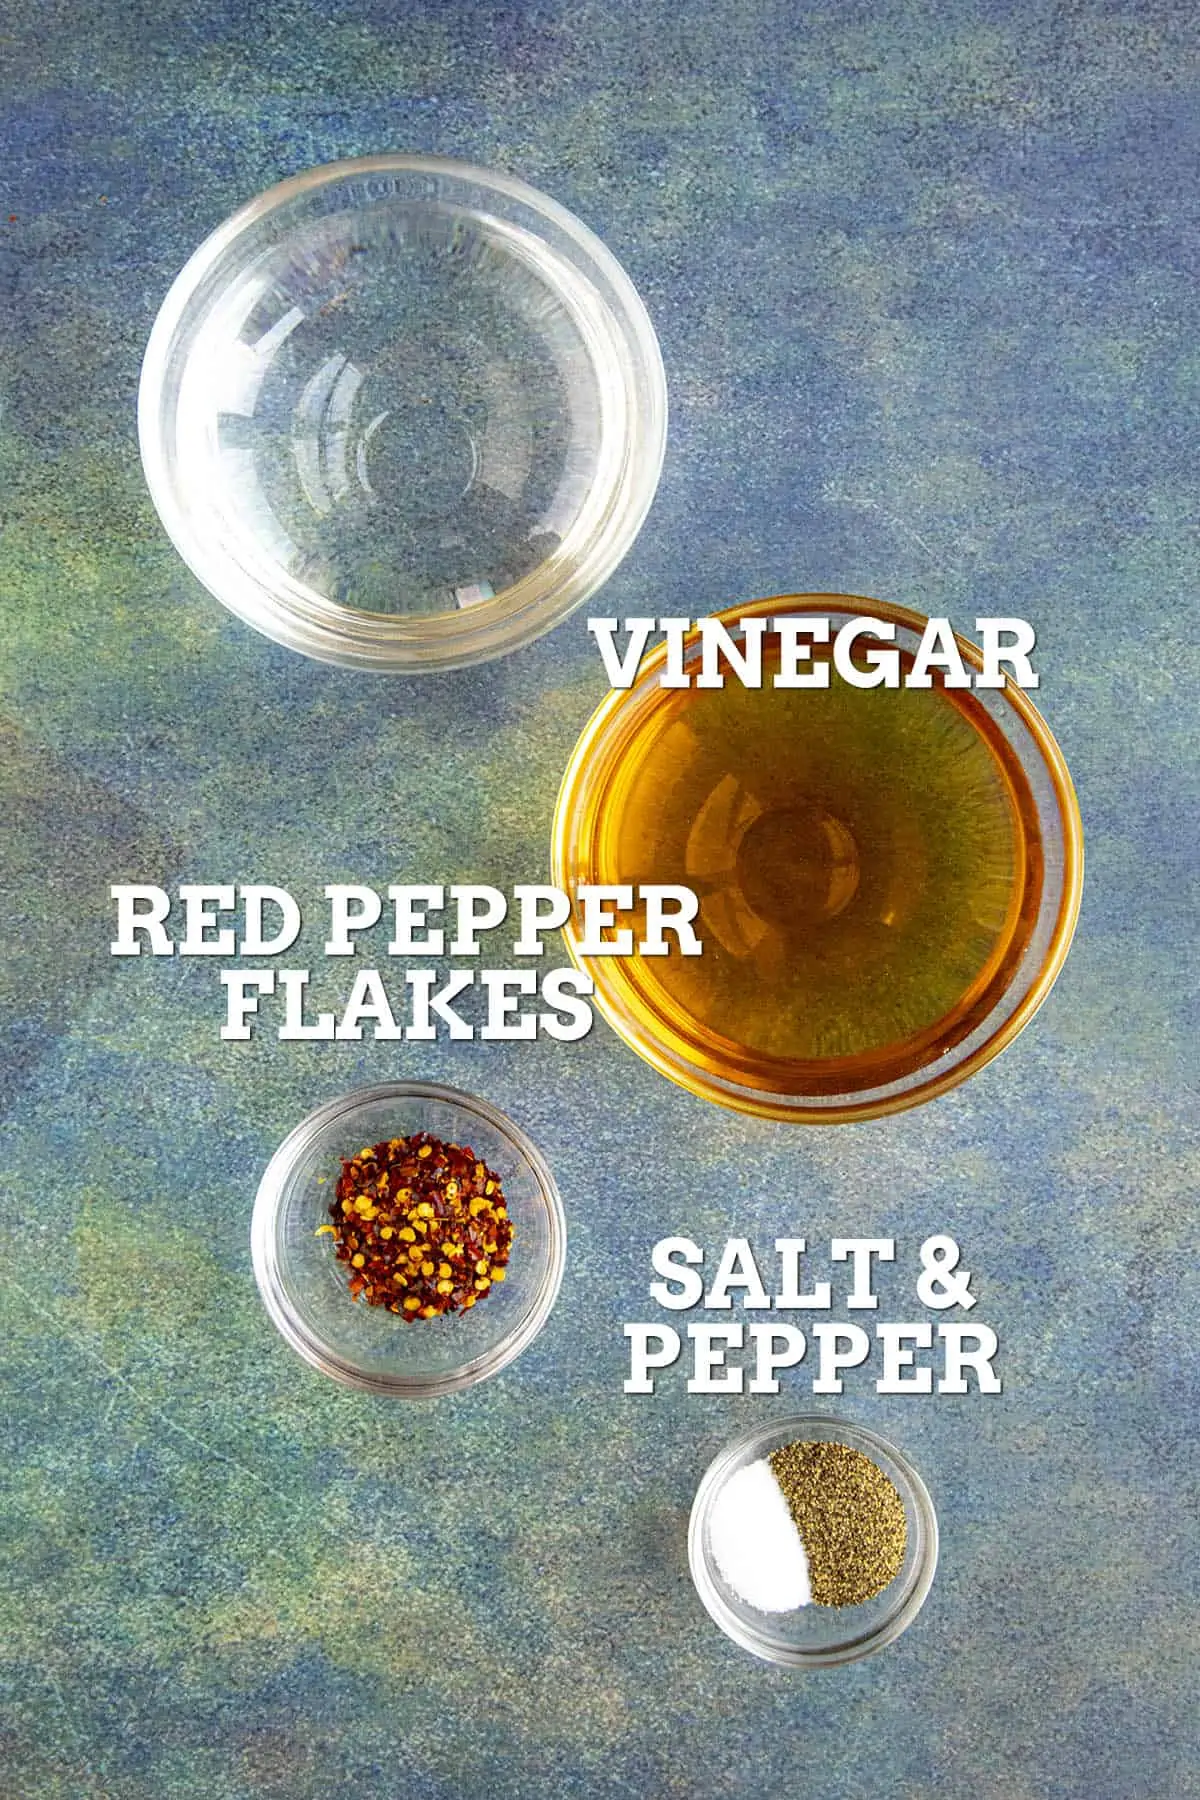 Carolina Vinegar BBQ Sauce Ingredients